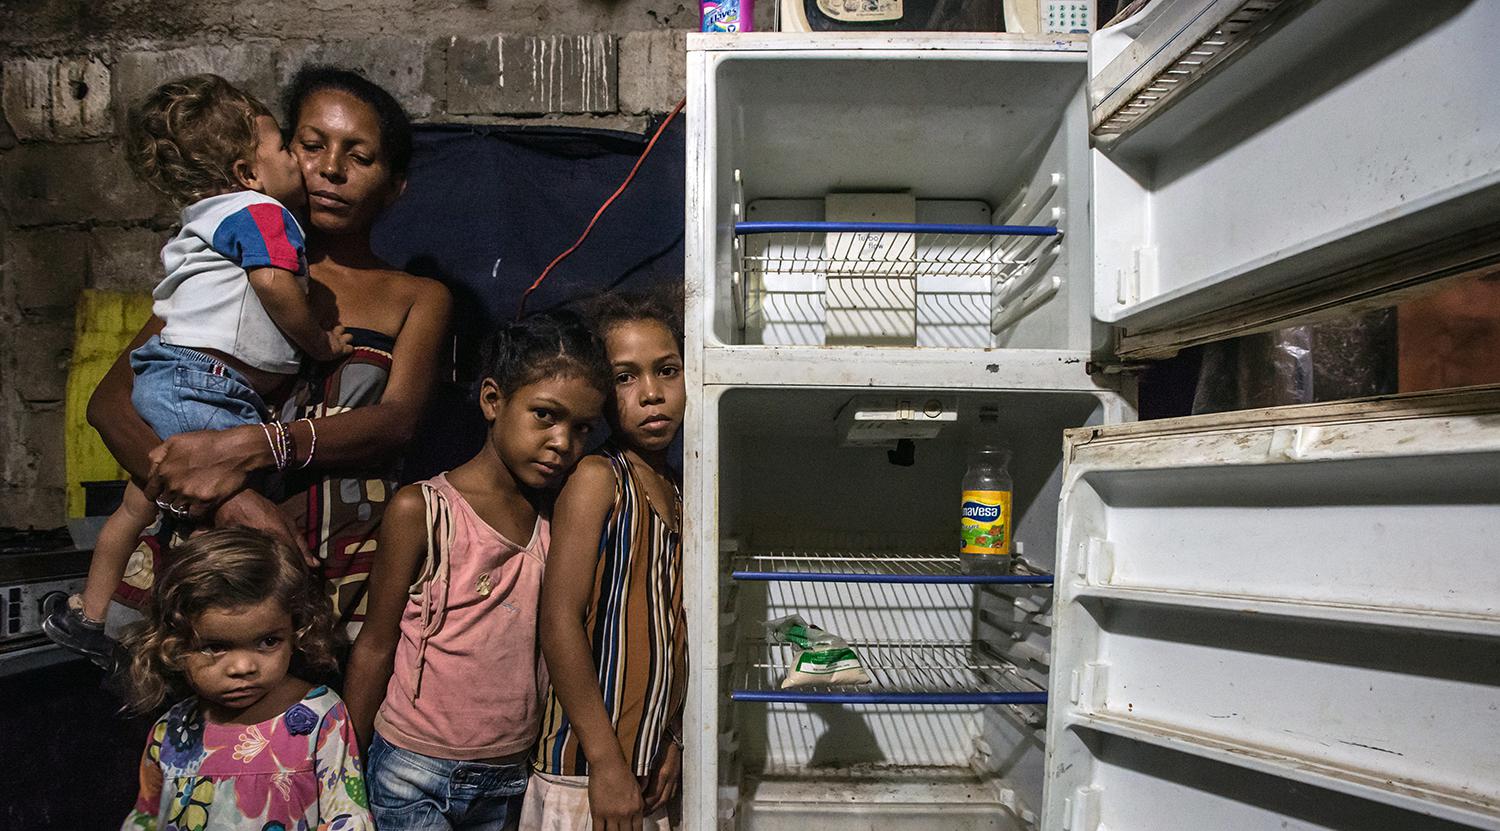 Leidy Cordova, une femme vénézuélienne âgée de 37 ans, photographiée le 16 juin 2016 avec quatre de ses cinq enfants dans leur appartement à Cumana, près de leur réfrigérateur qui ne contient qu’un sac de farine de maïs et une bouteille de vinaigre.